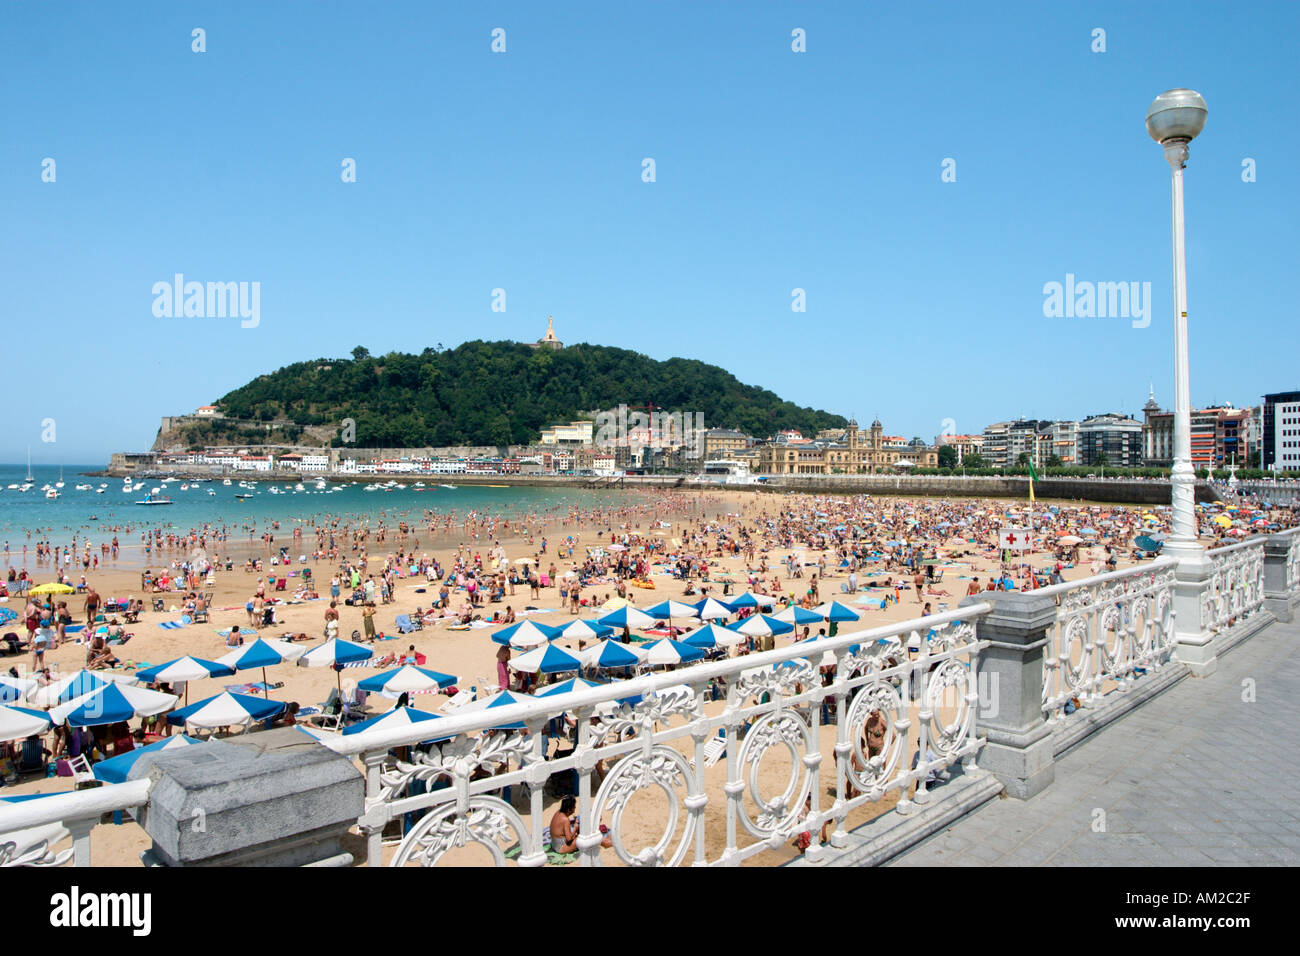 Strand Von Playa De La Concha Bahia De La Concha San Sebastian Donostia Baskenland Spanien Stockfotografie Alamy